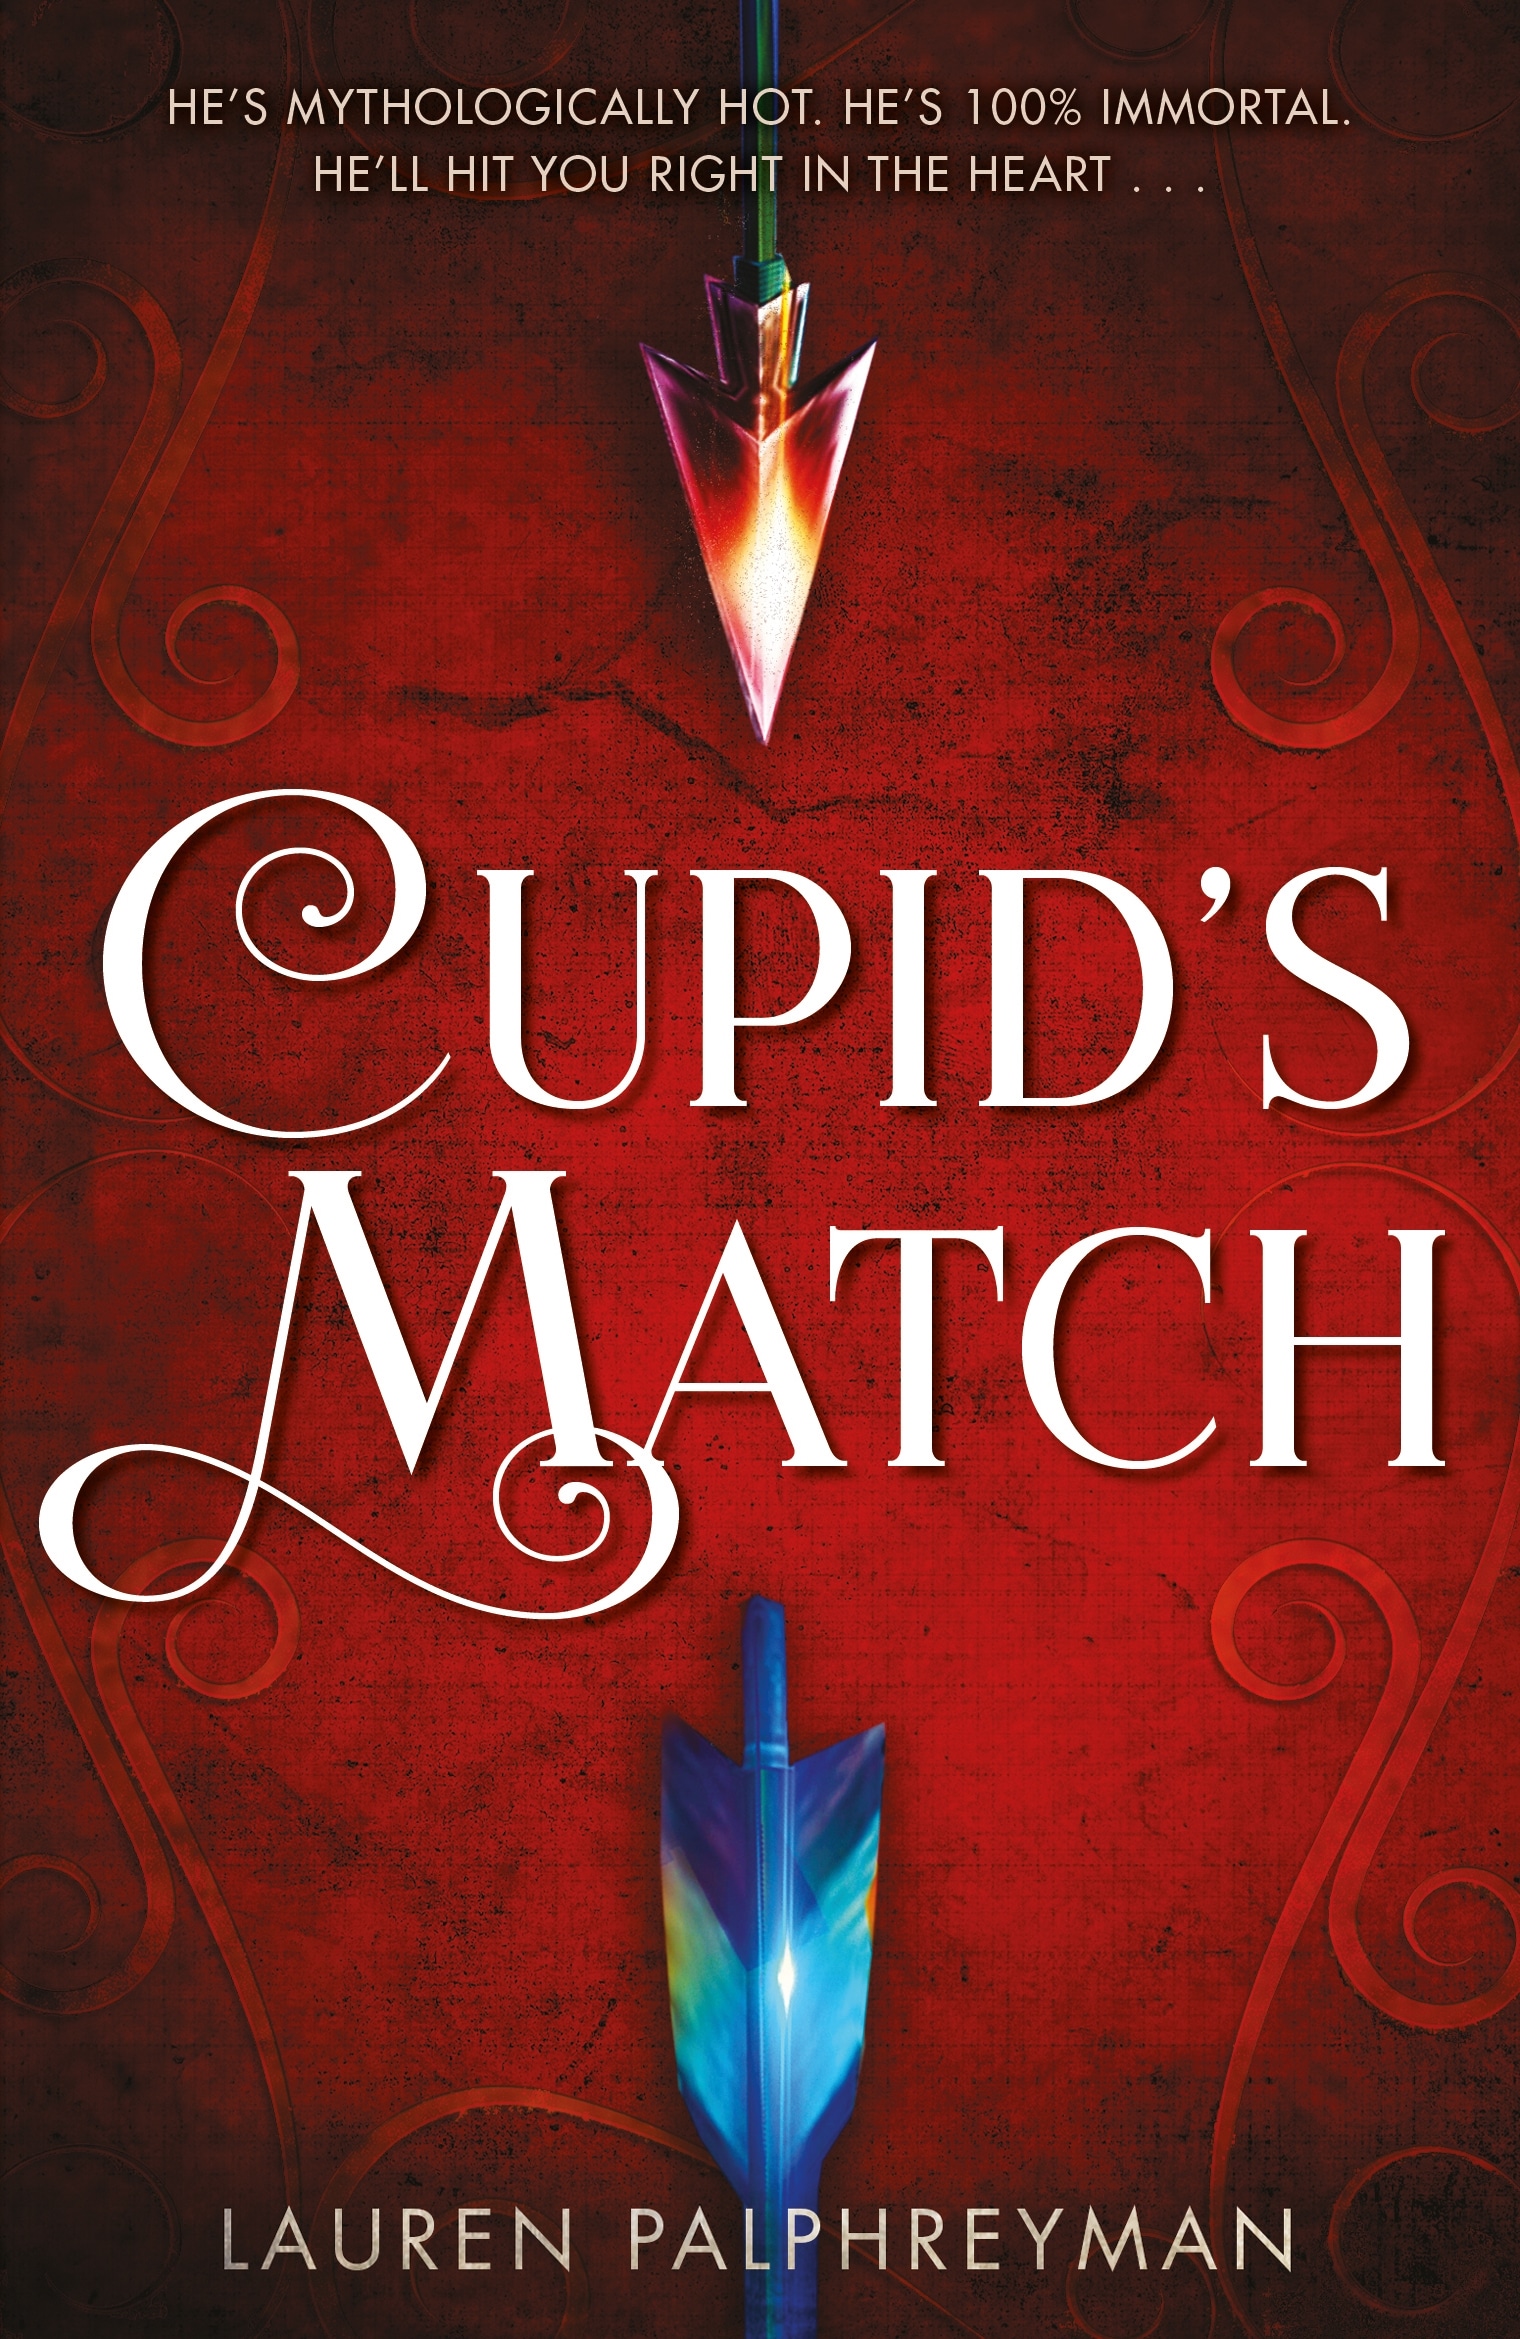 Book “Cupid's Match” by Lauren Palphreyman — October 3, 2019